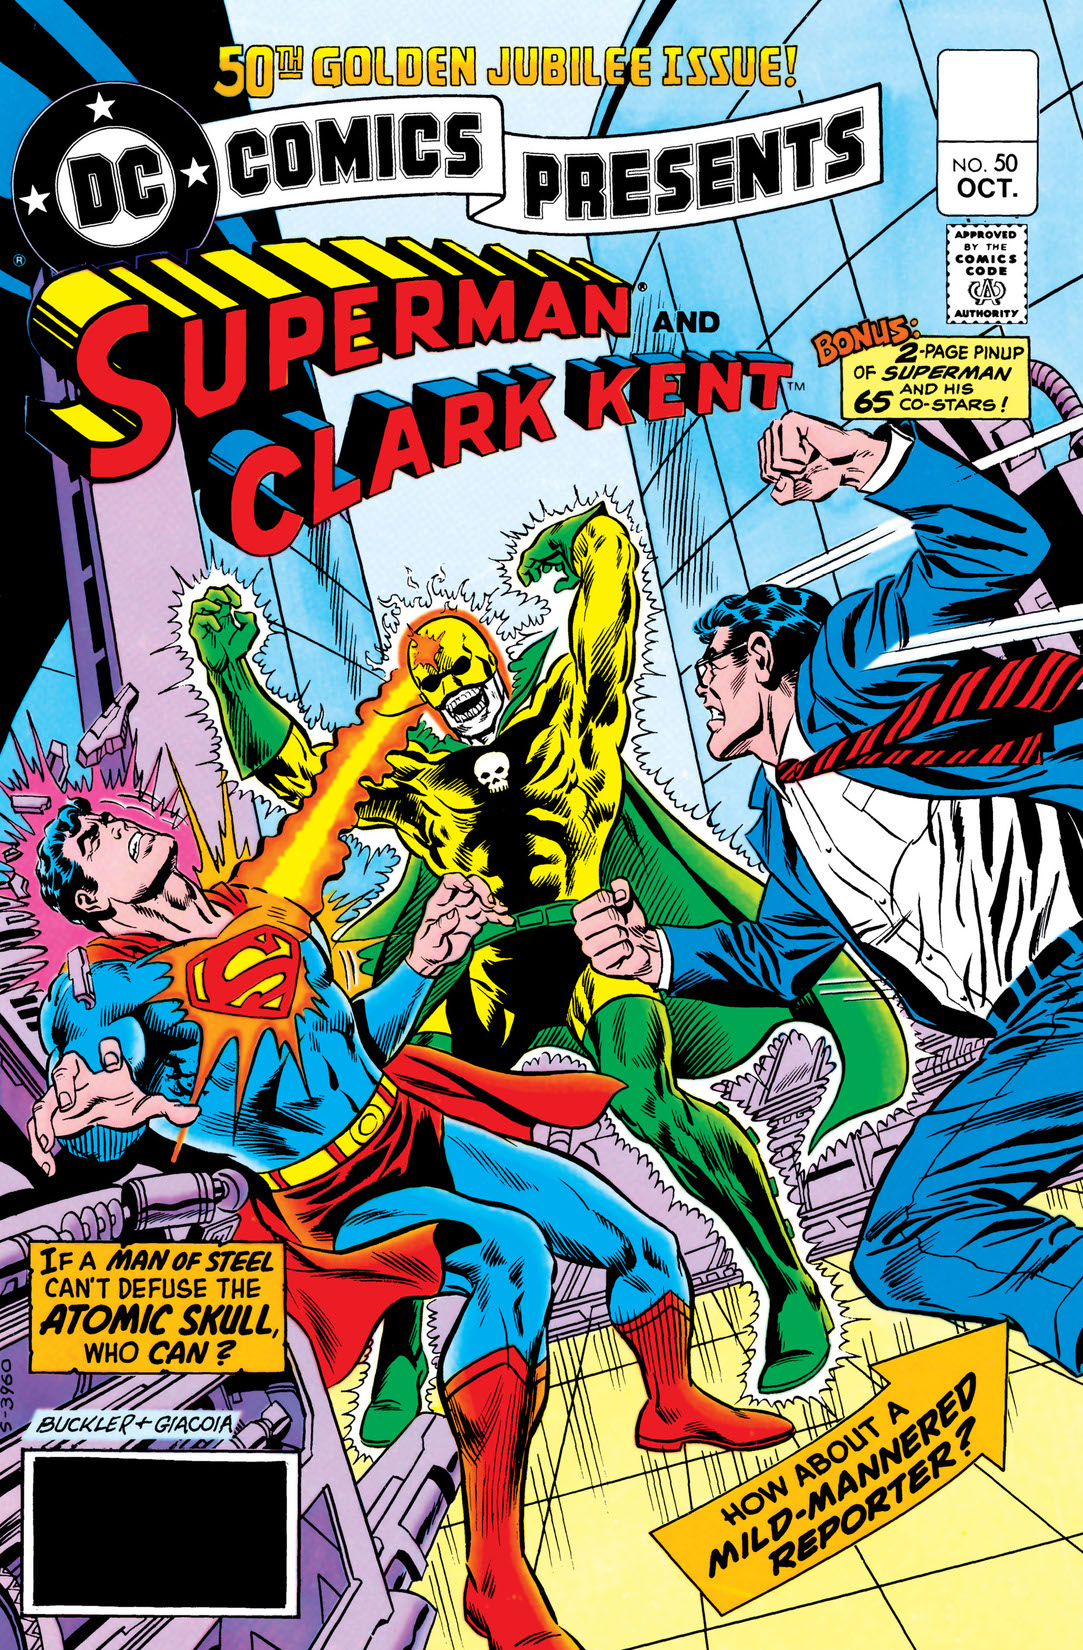 DC Comics Presents (1978-1986) #50 preview images